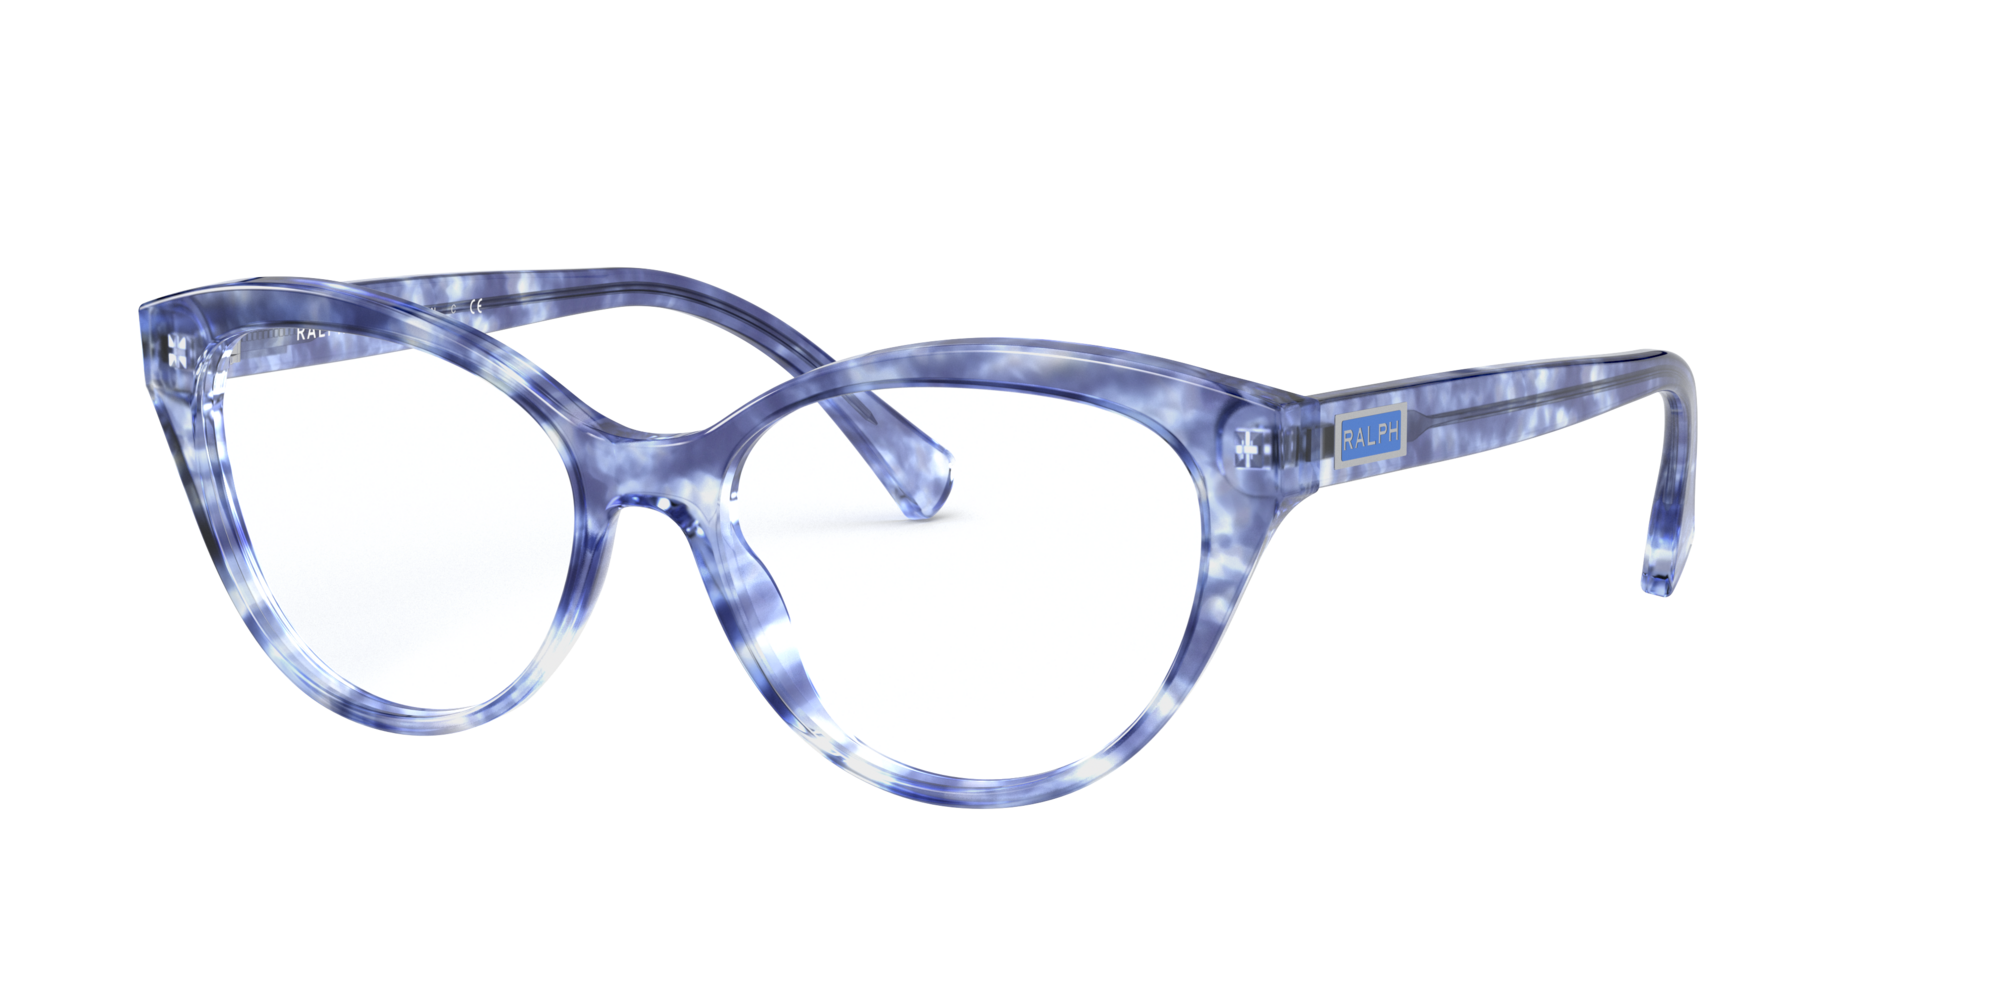 versace glasses frames target